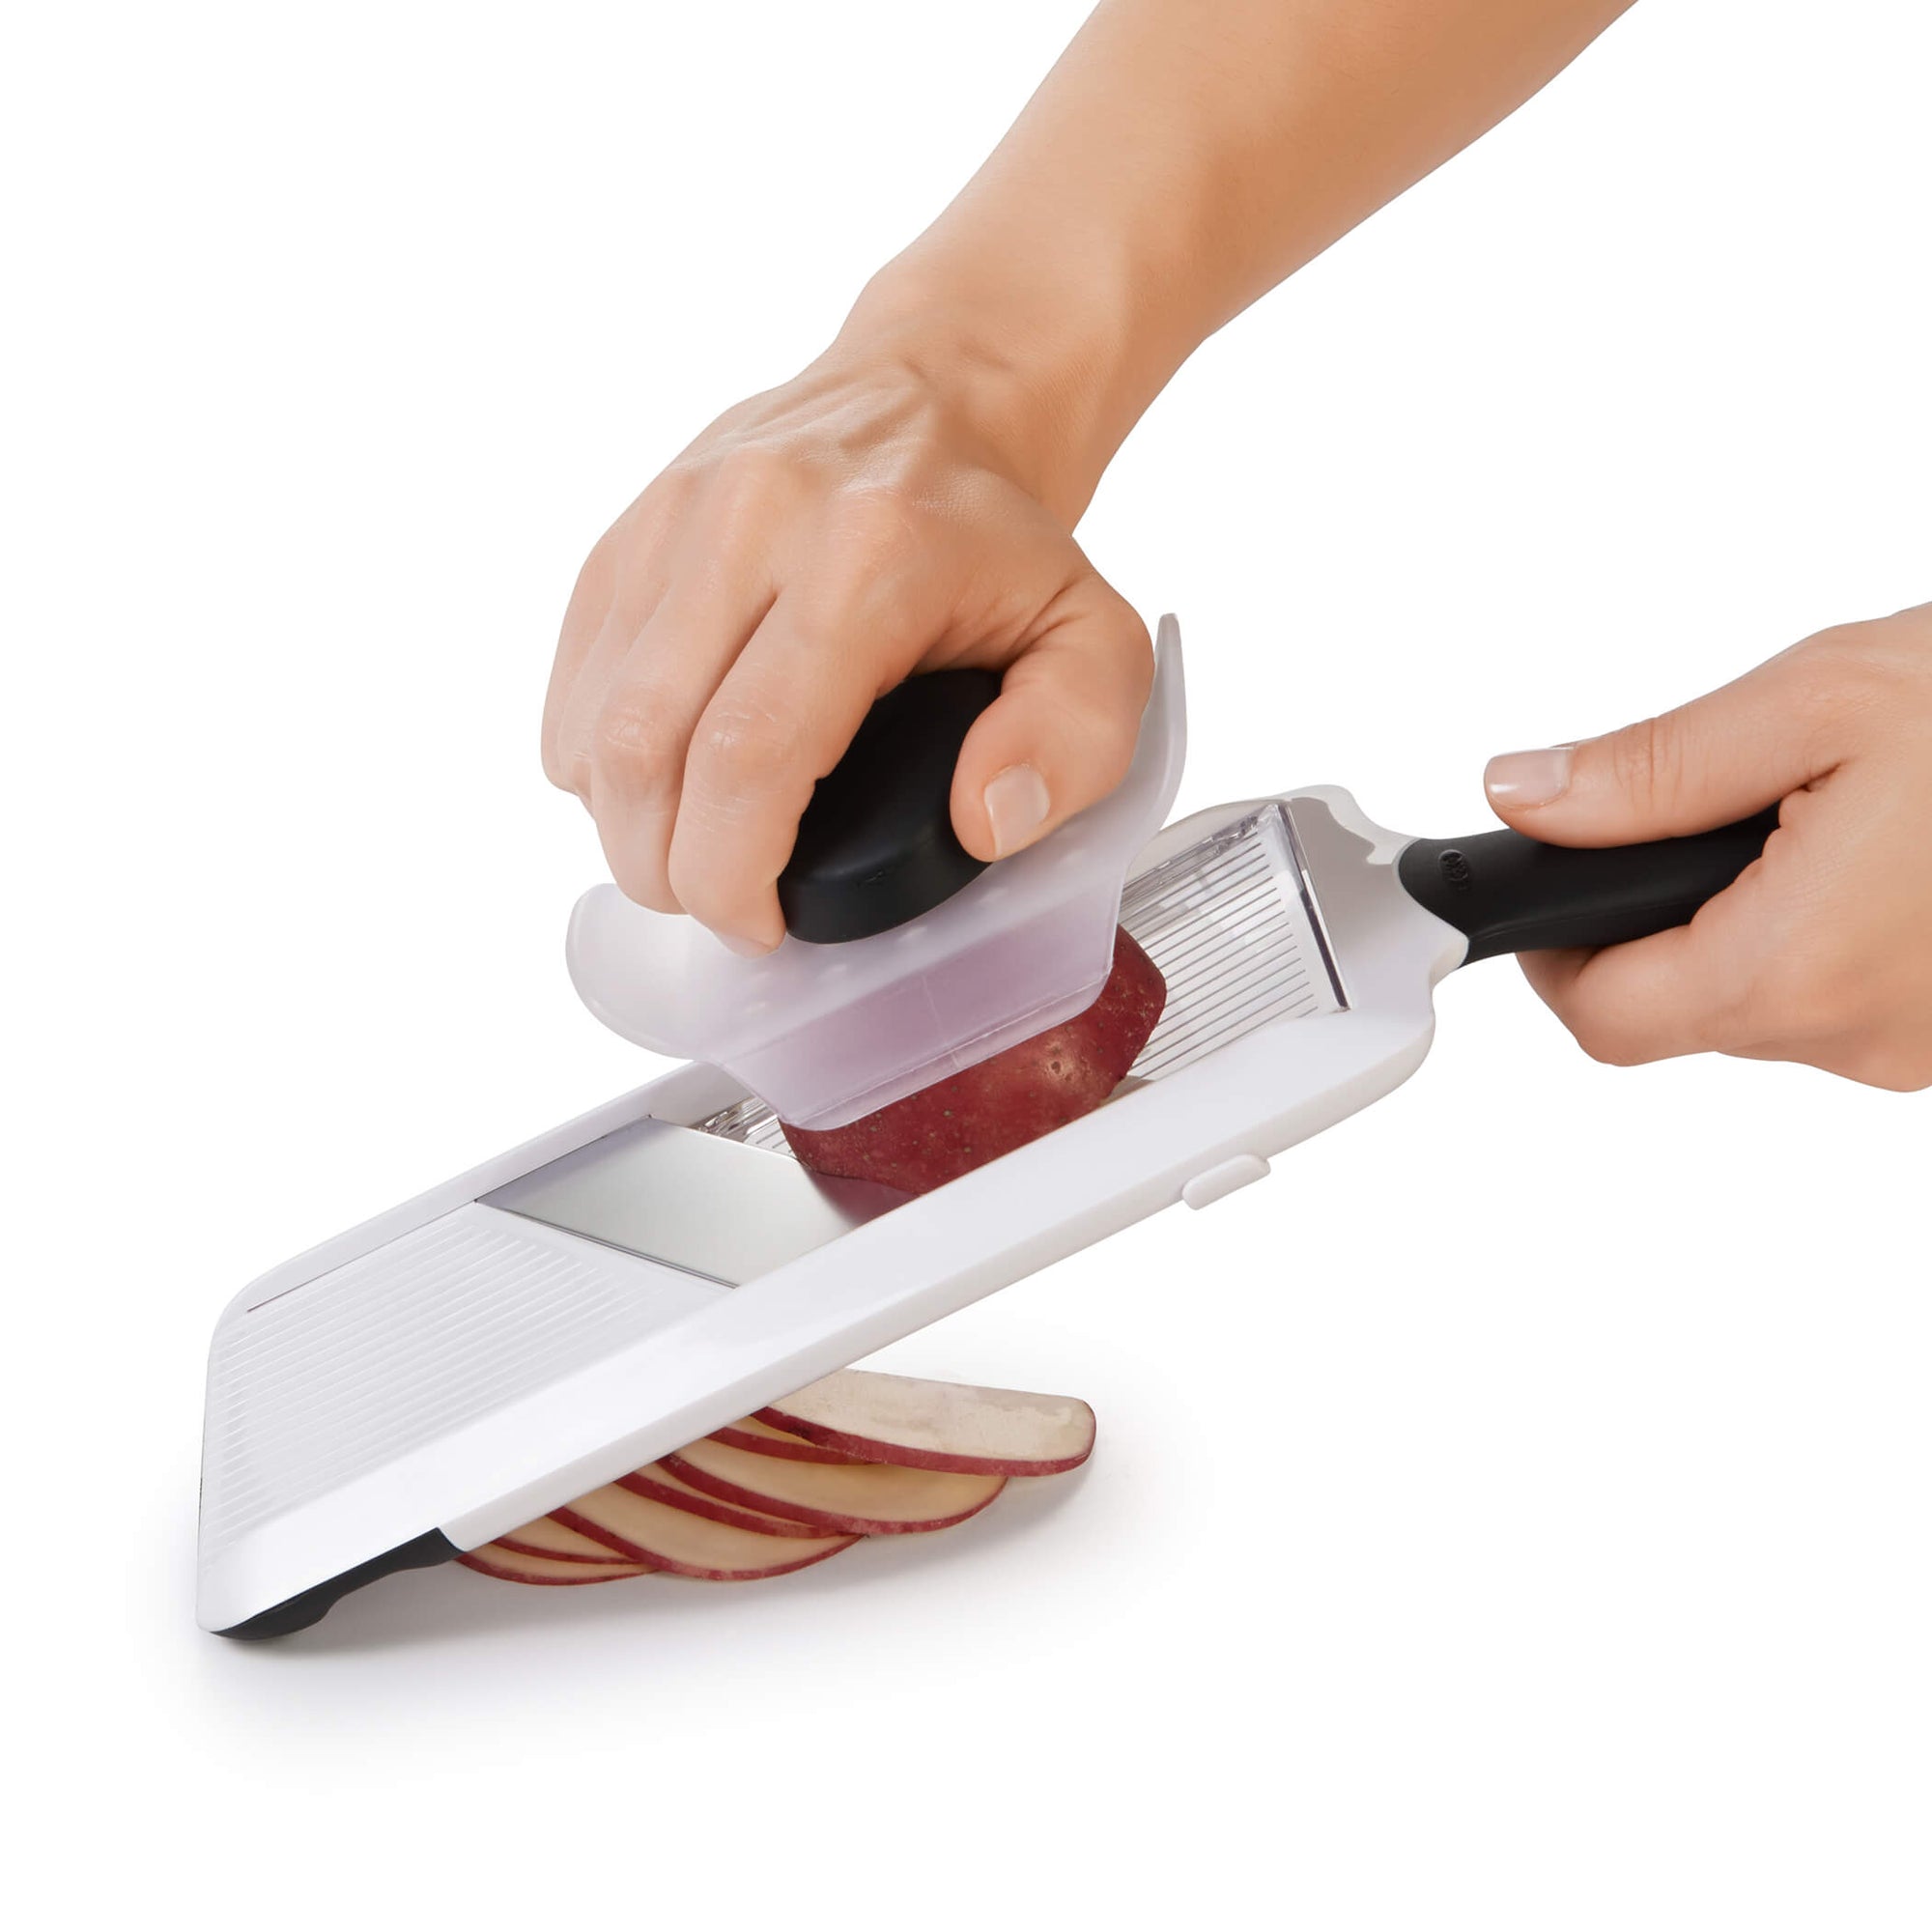 Ditch Your Mandoline for a Handheld Slicer Instead « Food Hacks